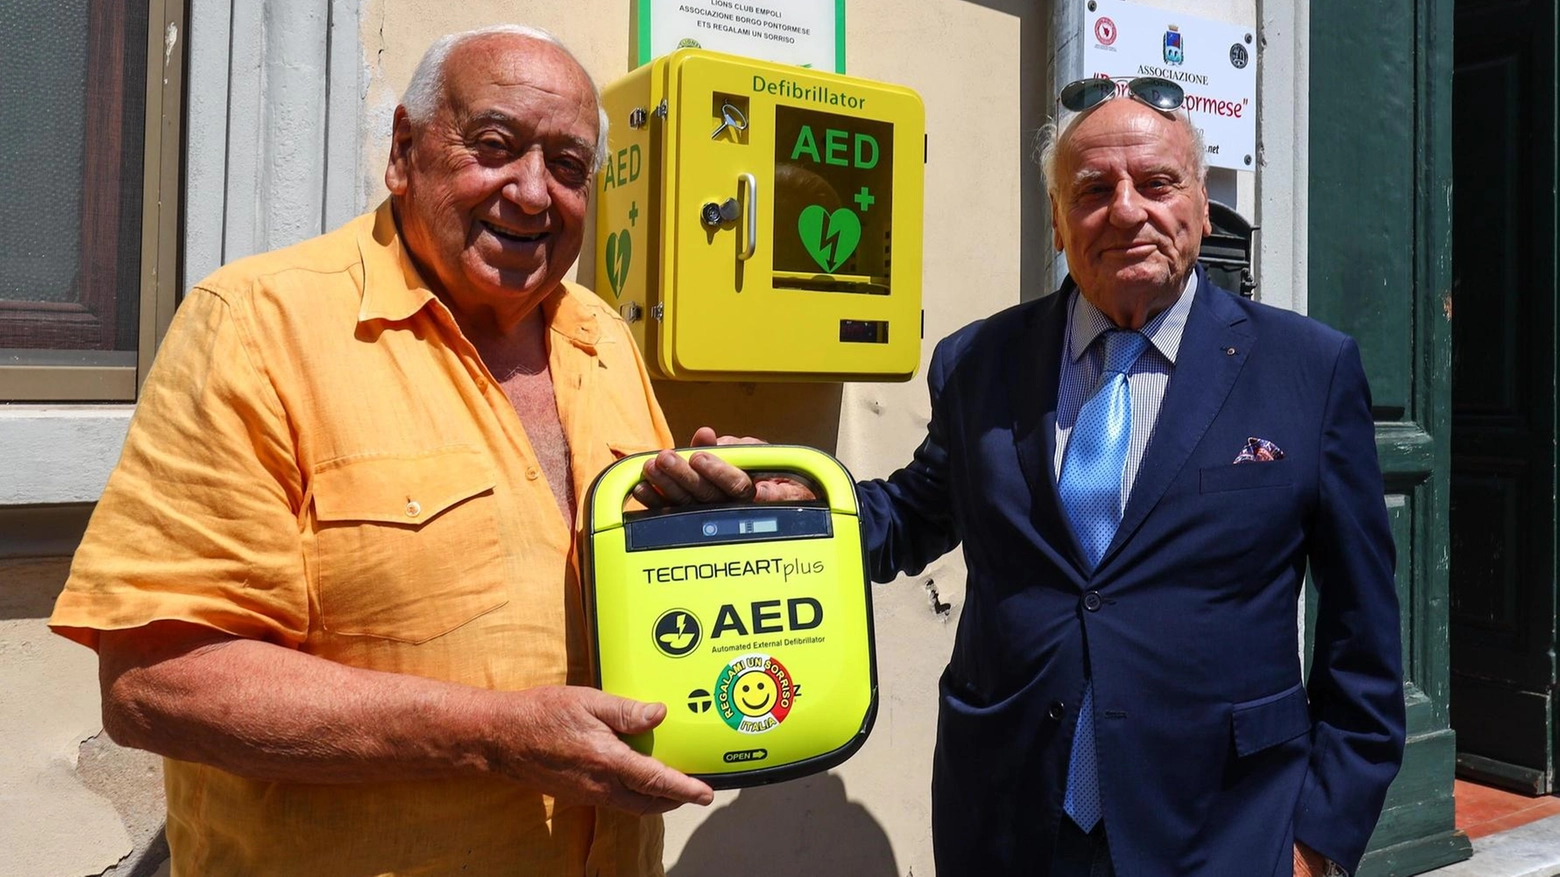 Il Lions Club di Empoli incrementa la cardioprotezione della città con l'installazione di un defibrillatore a Pontorme, grazie alla collaborazione di varie associazioni. La comunità si prepara all'uso con corsi BLSD.